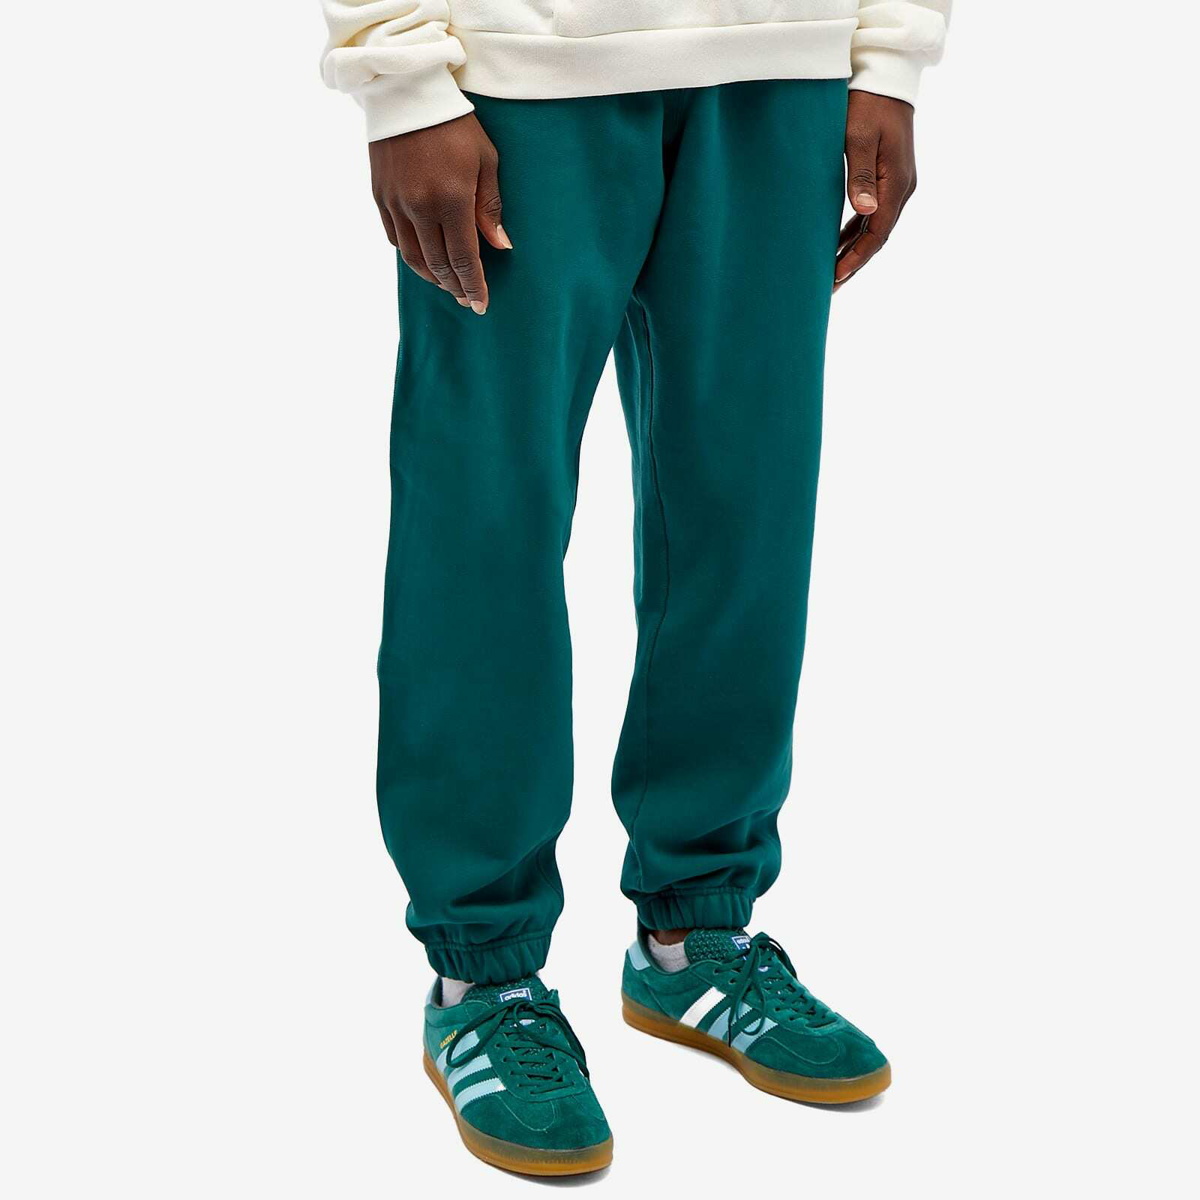 Adidas Men's Premium Essentials Sweat Pant in Collegiate Green adidas